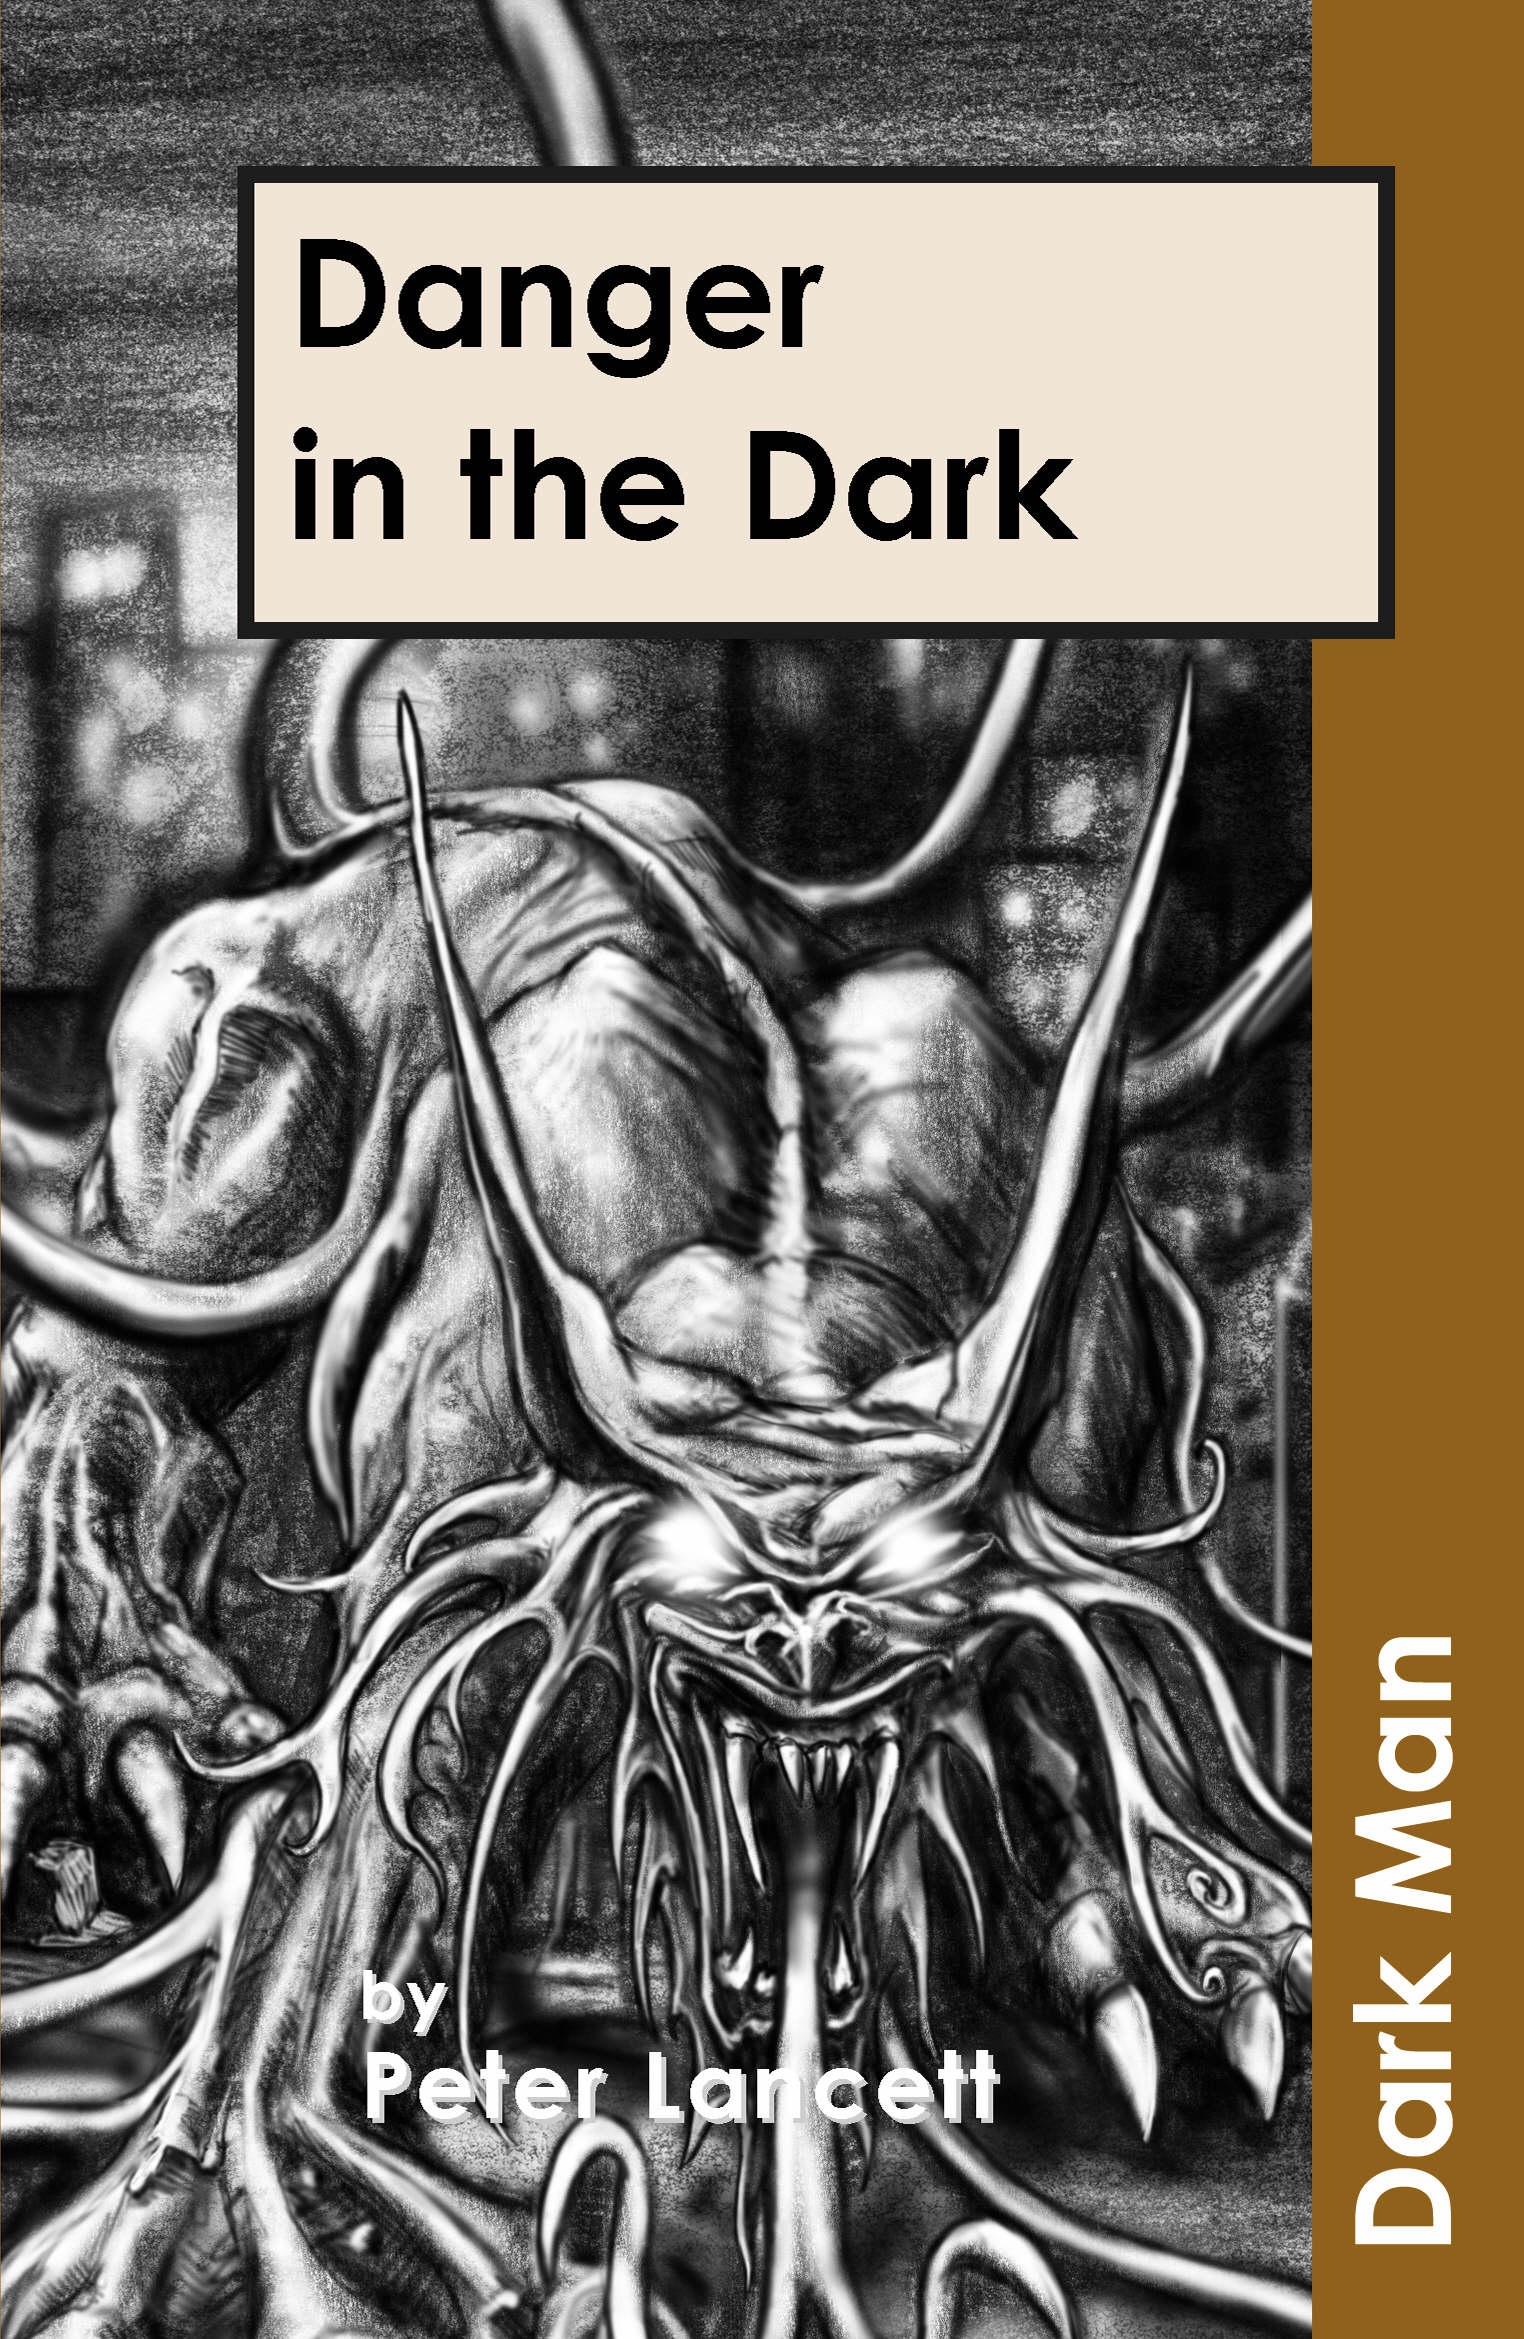 Danger in the dark by Lancett Peter (9781841674155) | BrownsBfS